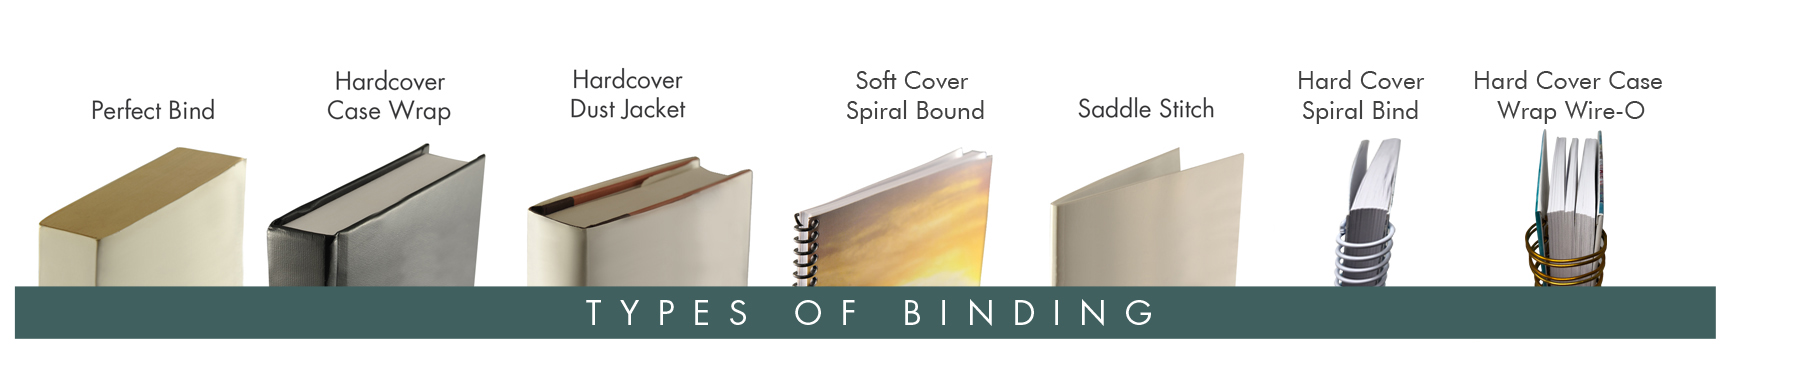 Types of Binding